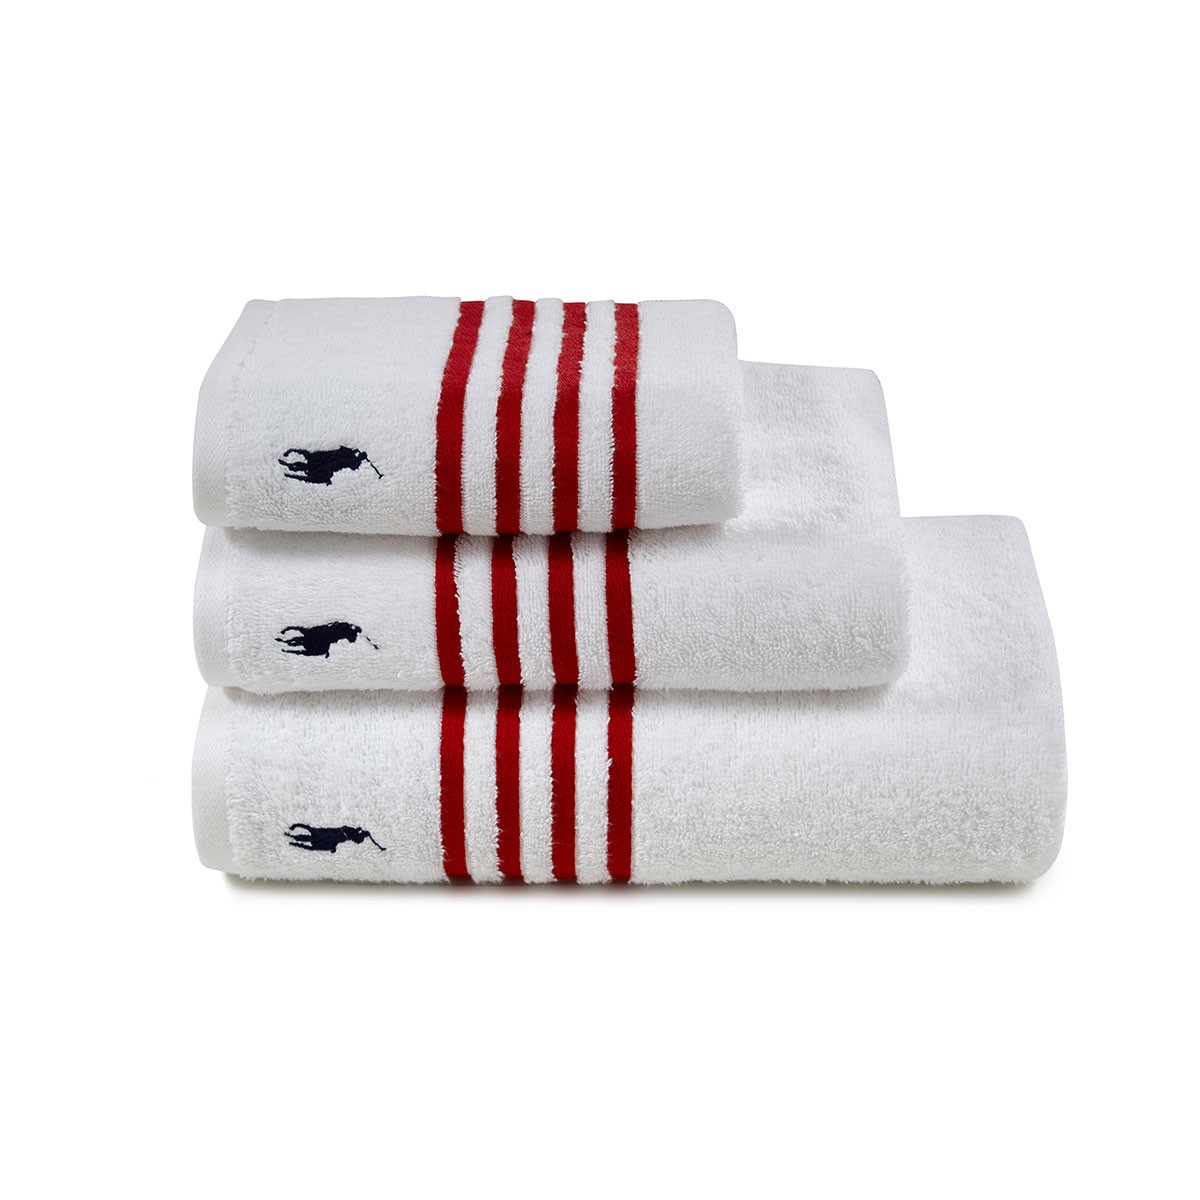 Sale, Ralph Lauren Home Polo Player Bath Towel (75cm x 140cm)